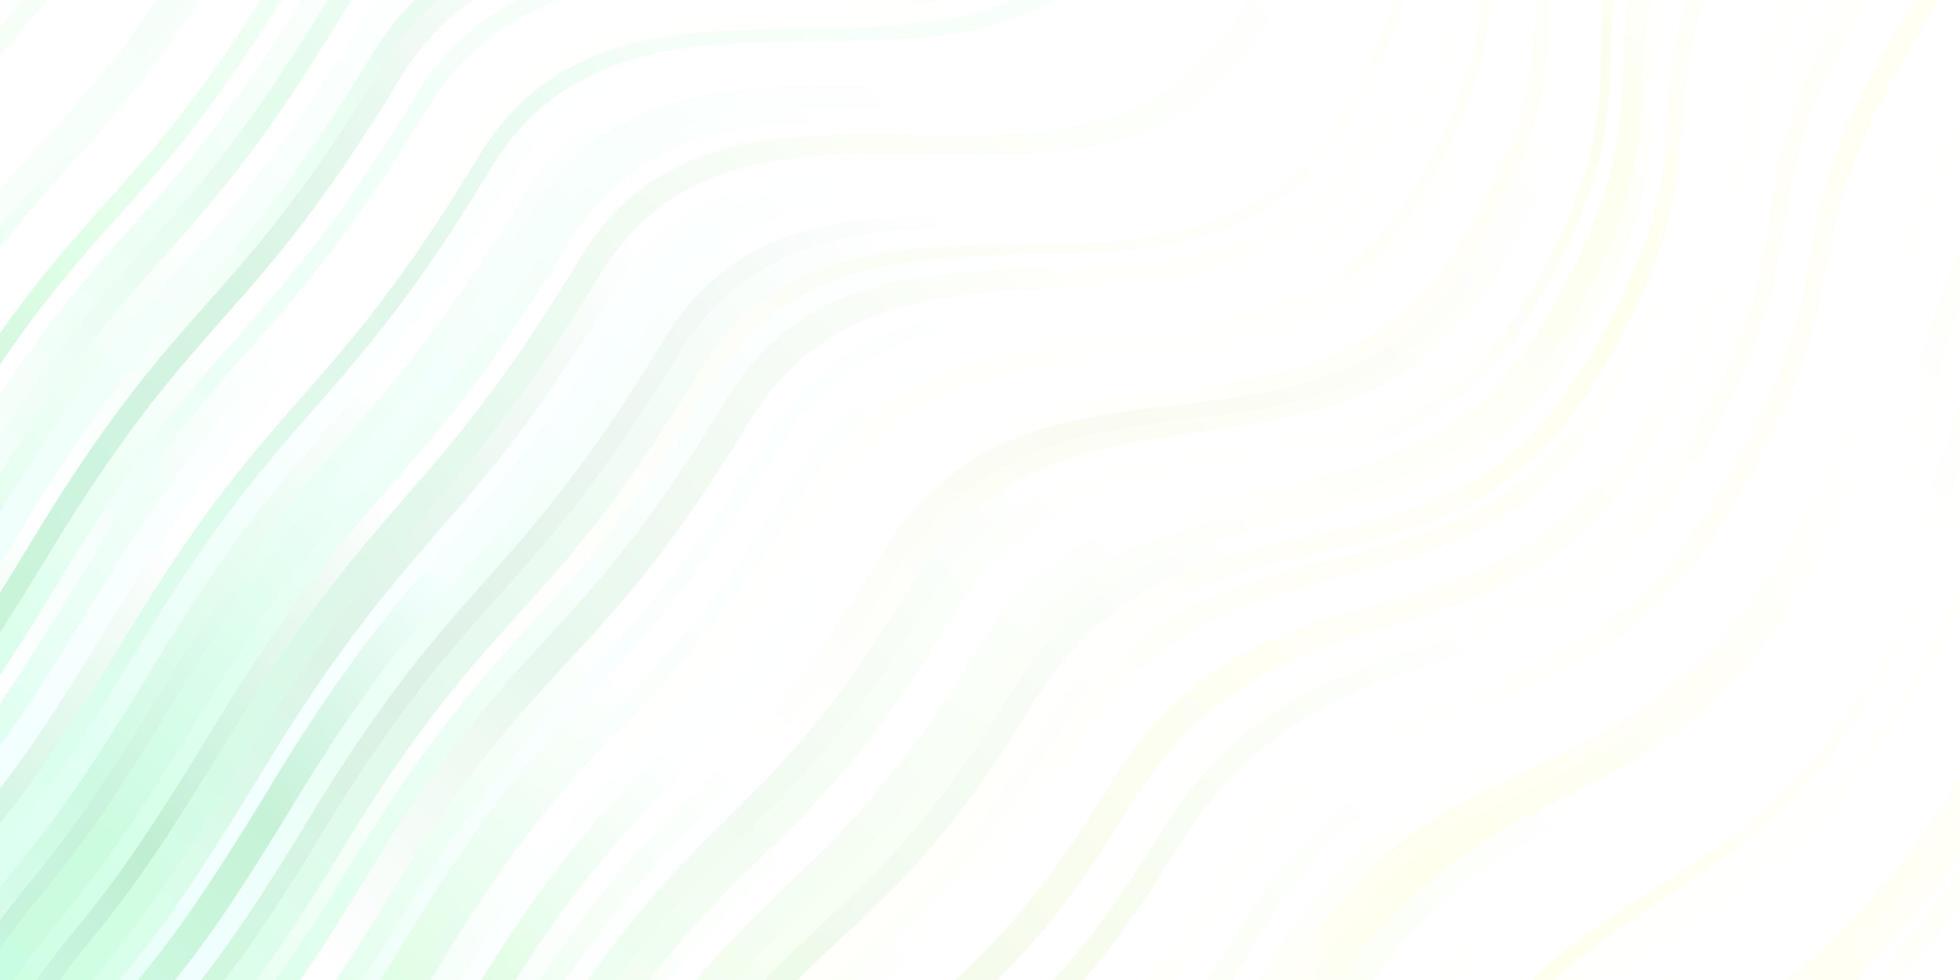 ljusgrön vektorbakgrund med linjer. illustration i halvtonstil med lutningskurvor. mönster för affärshäften, broschyrer vektor